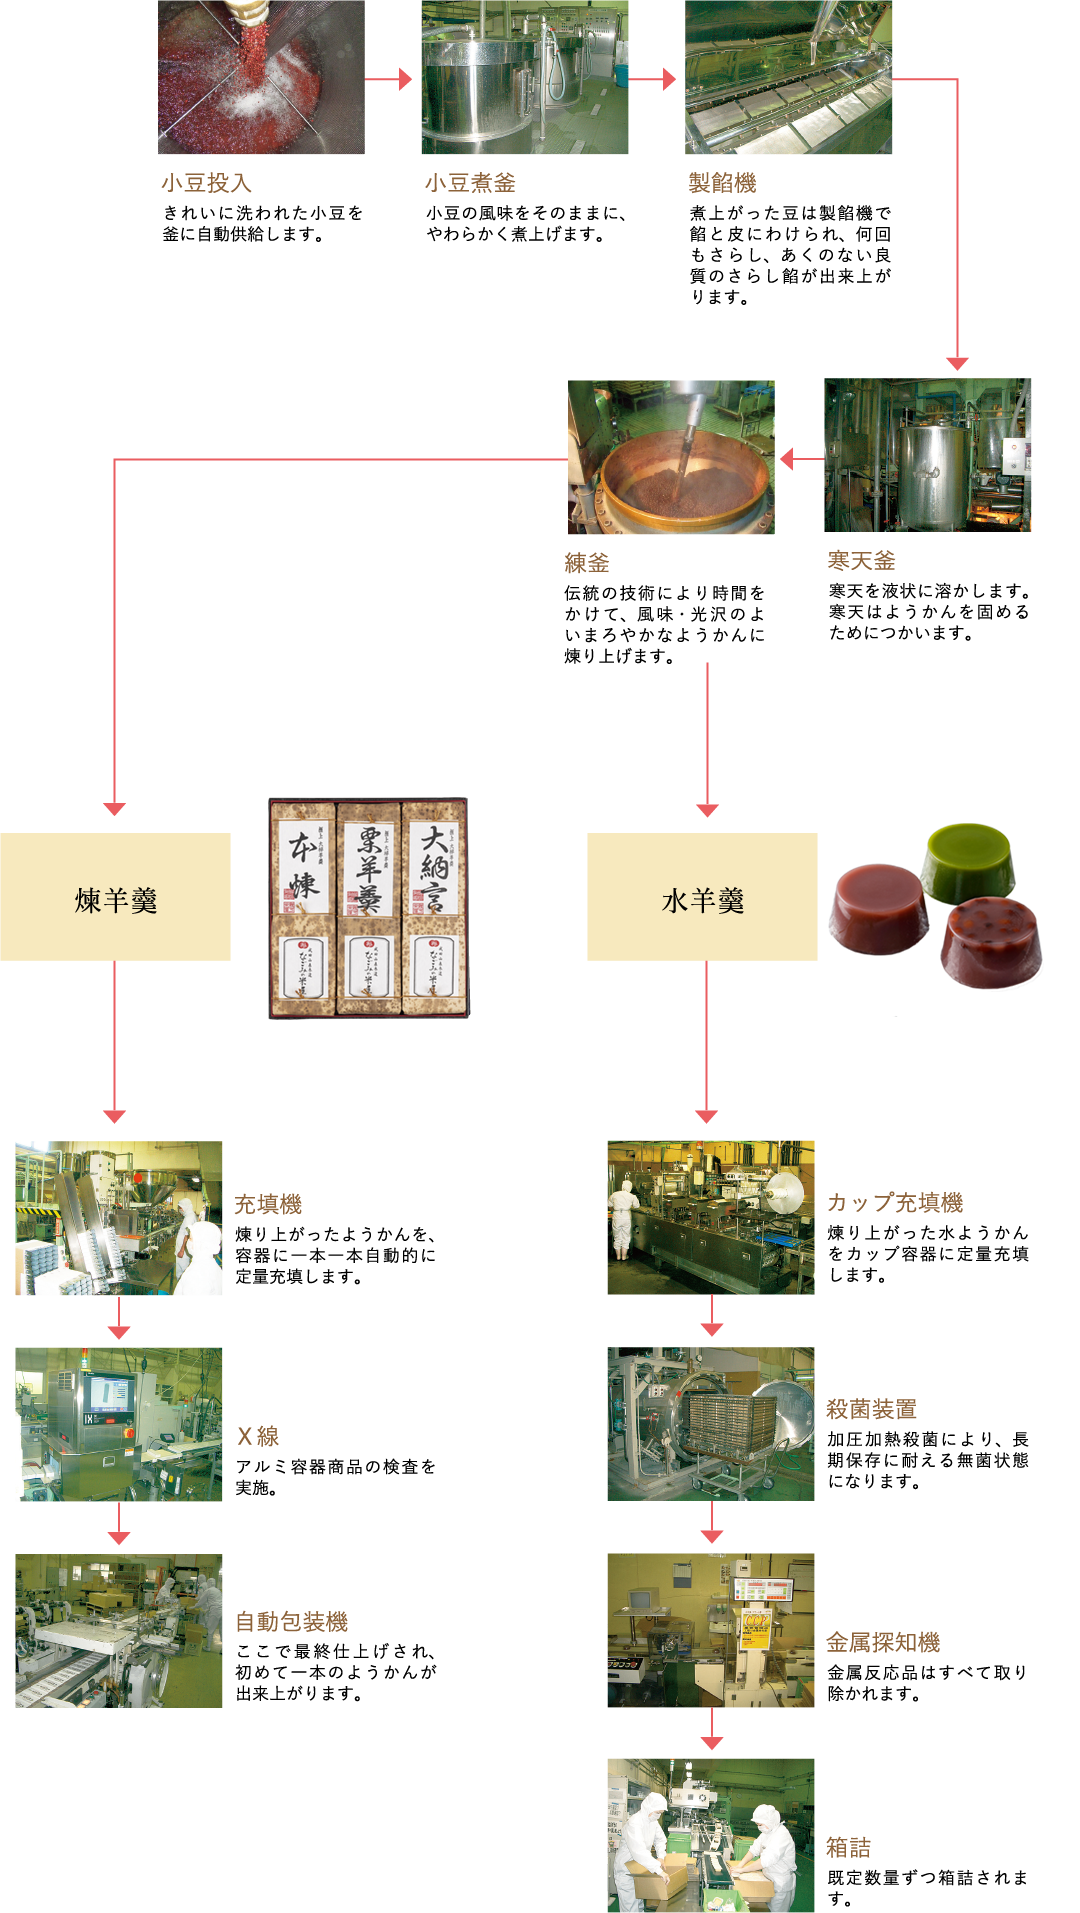 千葉県なごみの米屋の商品ができるまで、羊羹の製造工程です。